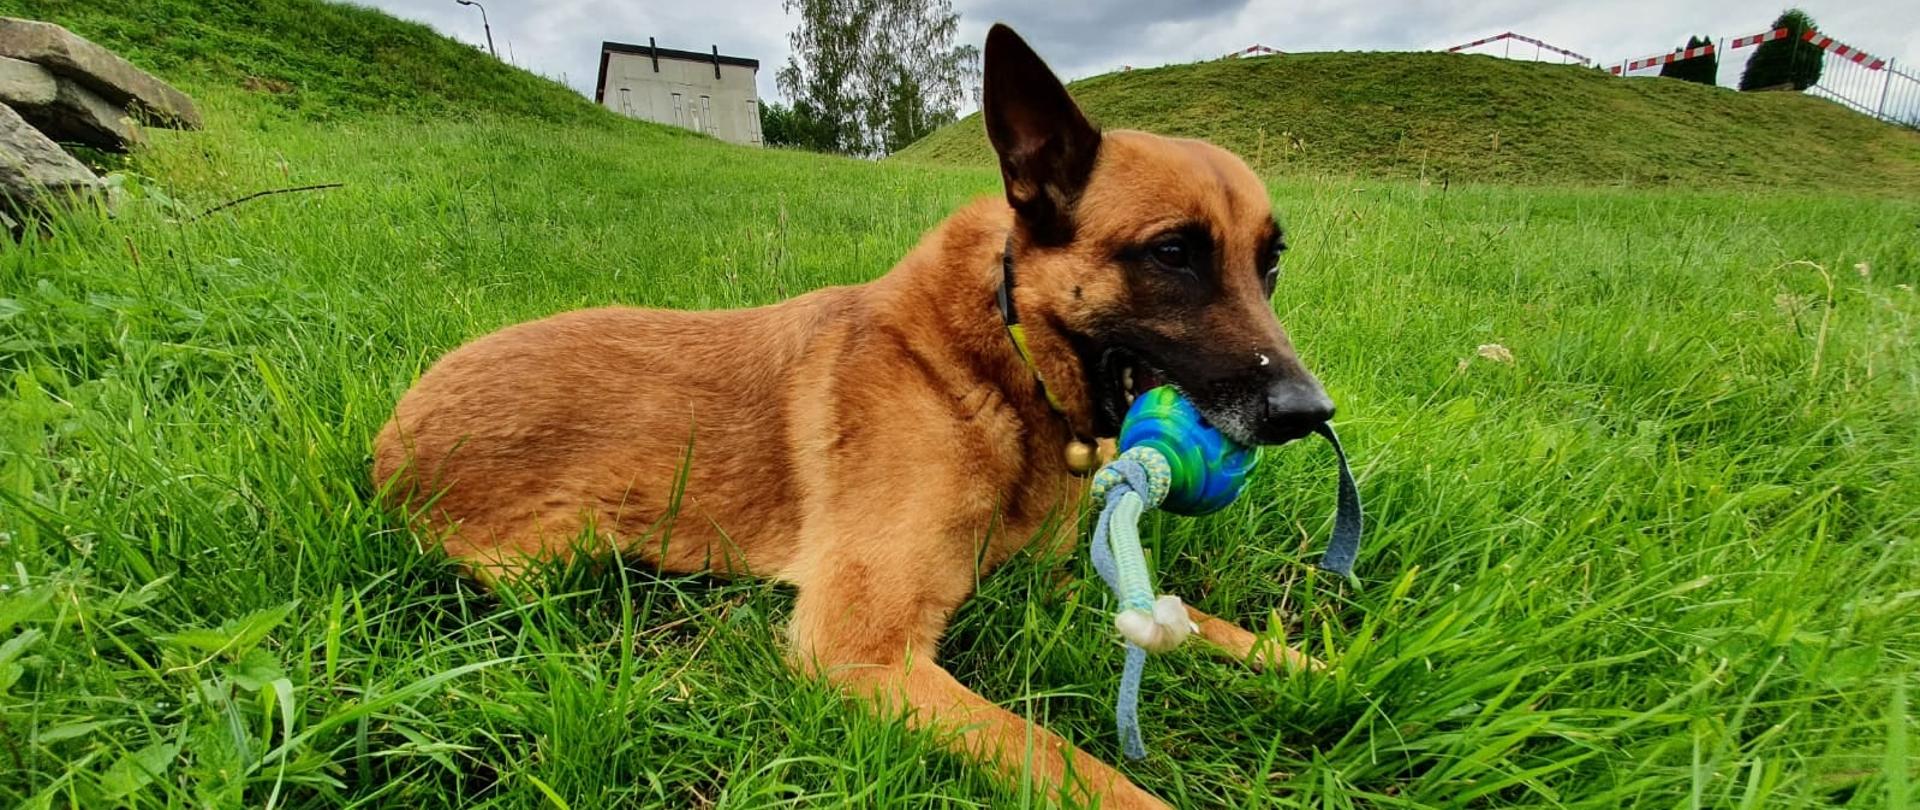 Brązowy pies siedzący na trawie, w pysku trzyma niebieską zabawkę